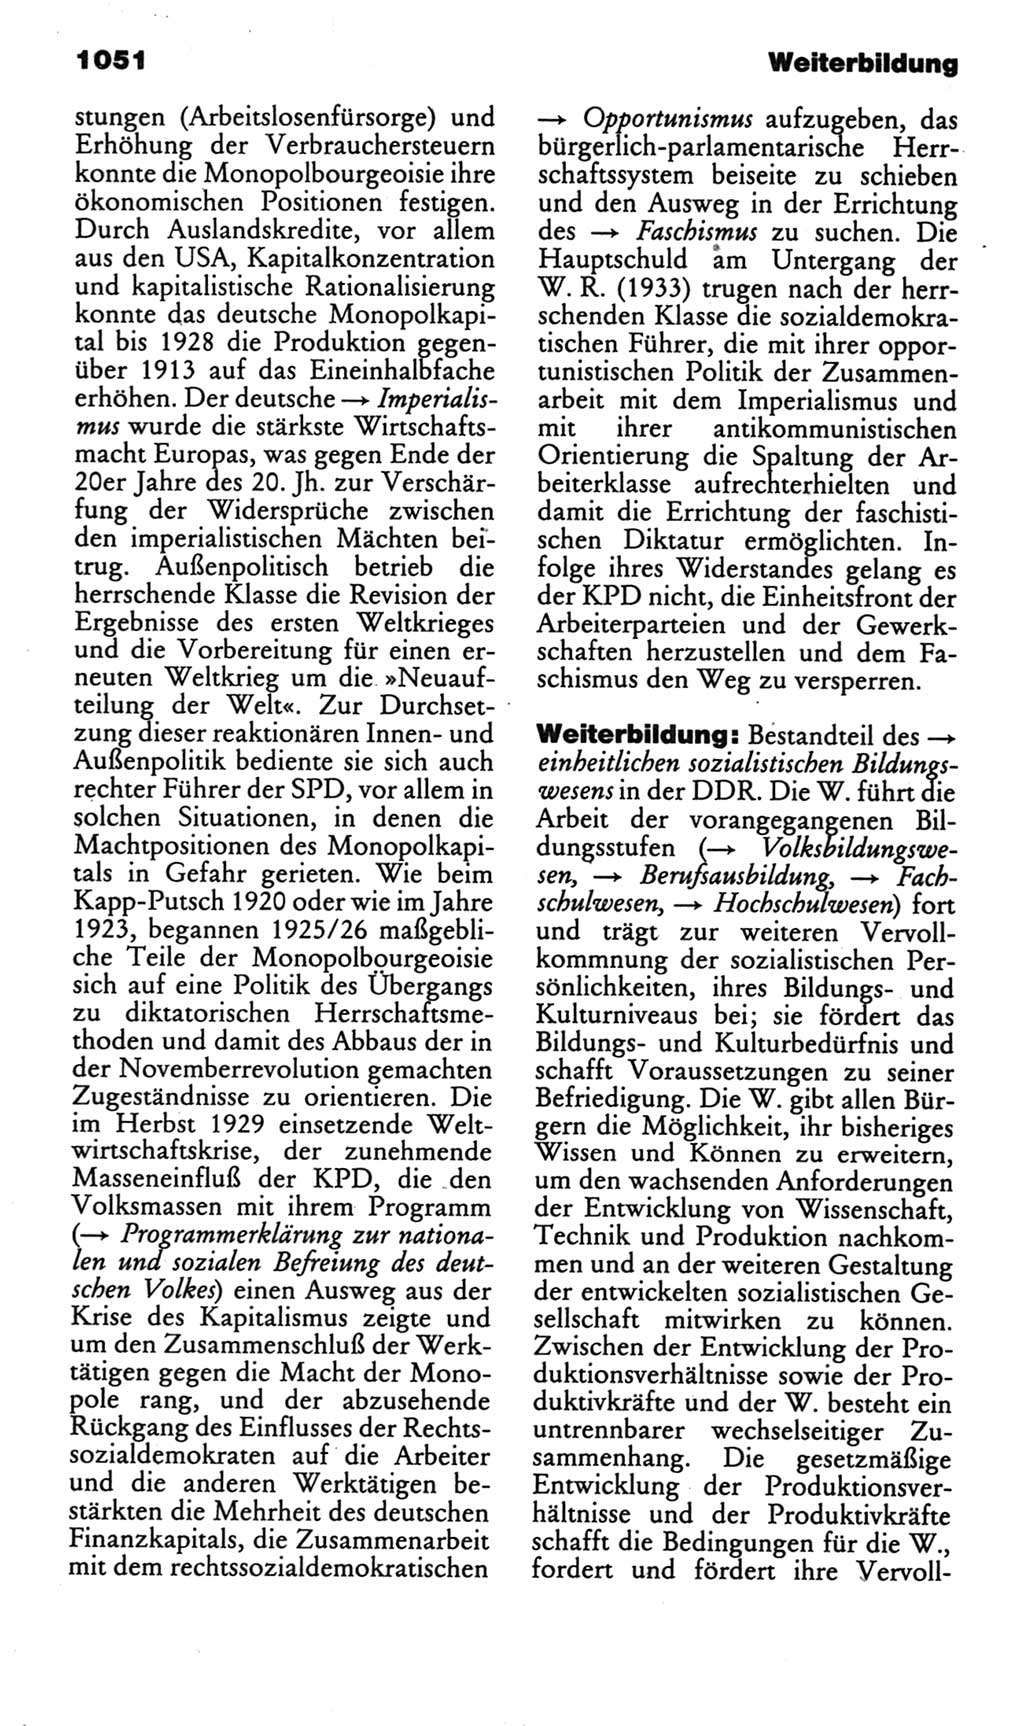 Kleines politisches Wörterbuch [Deutsche Demokratische Republik (DDR)] 1985, Seite 1051 (Kl. pol. Wb. DDR 1985, S. 1051)